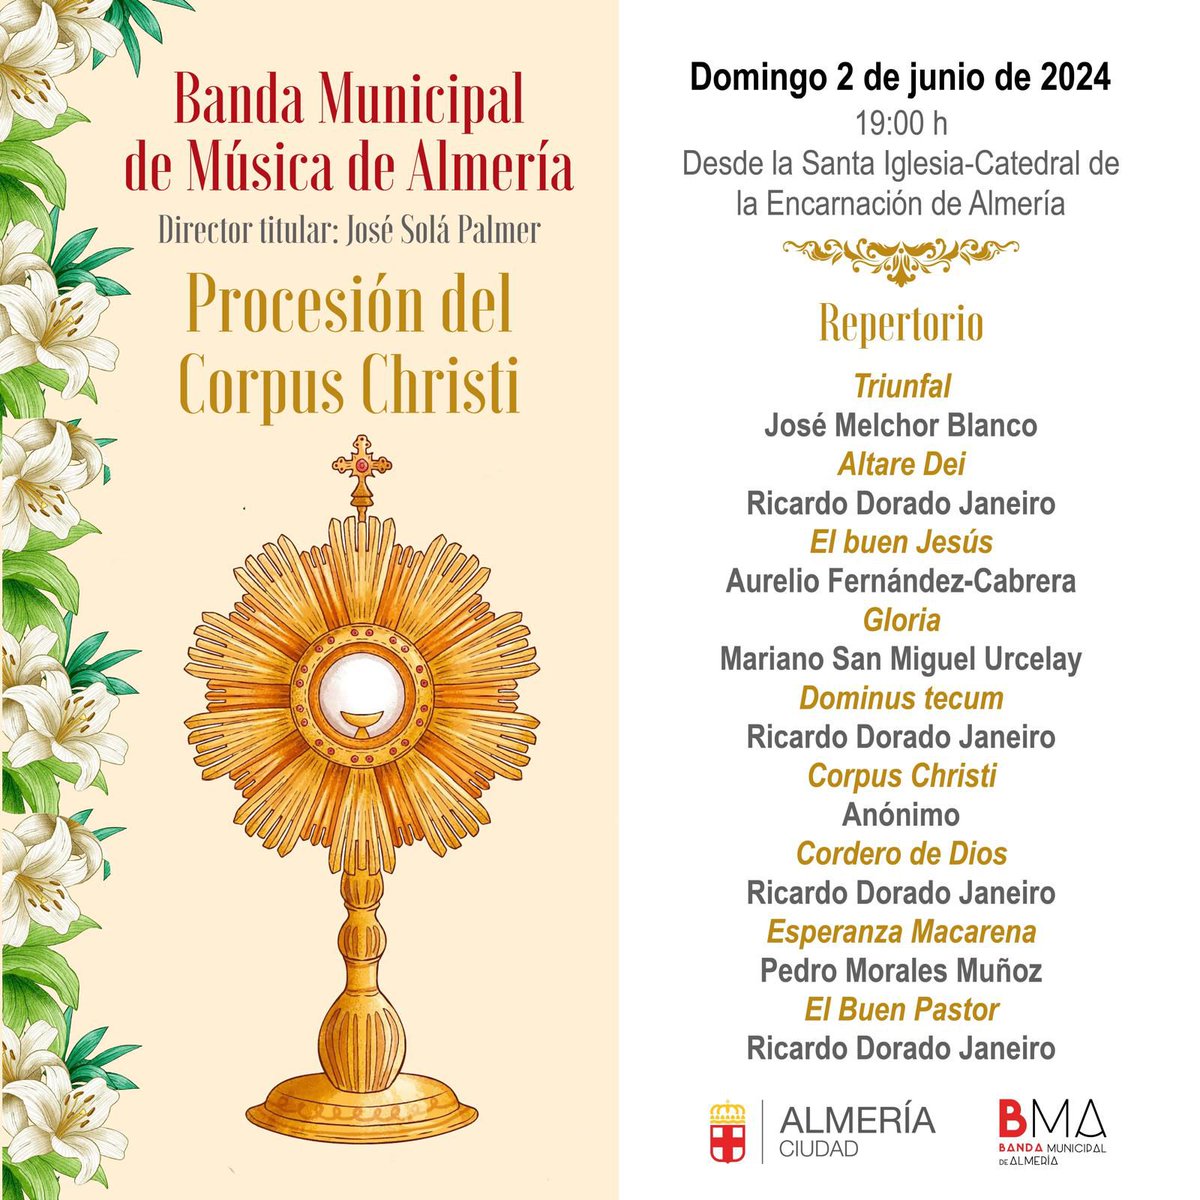 🎼 La Banda Municipal de Música de Almería participará este domingo en la procesión del Corpus Christi, desde la Catedral, a las 19.00 horas.